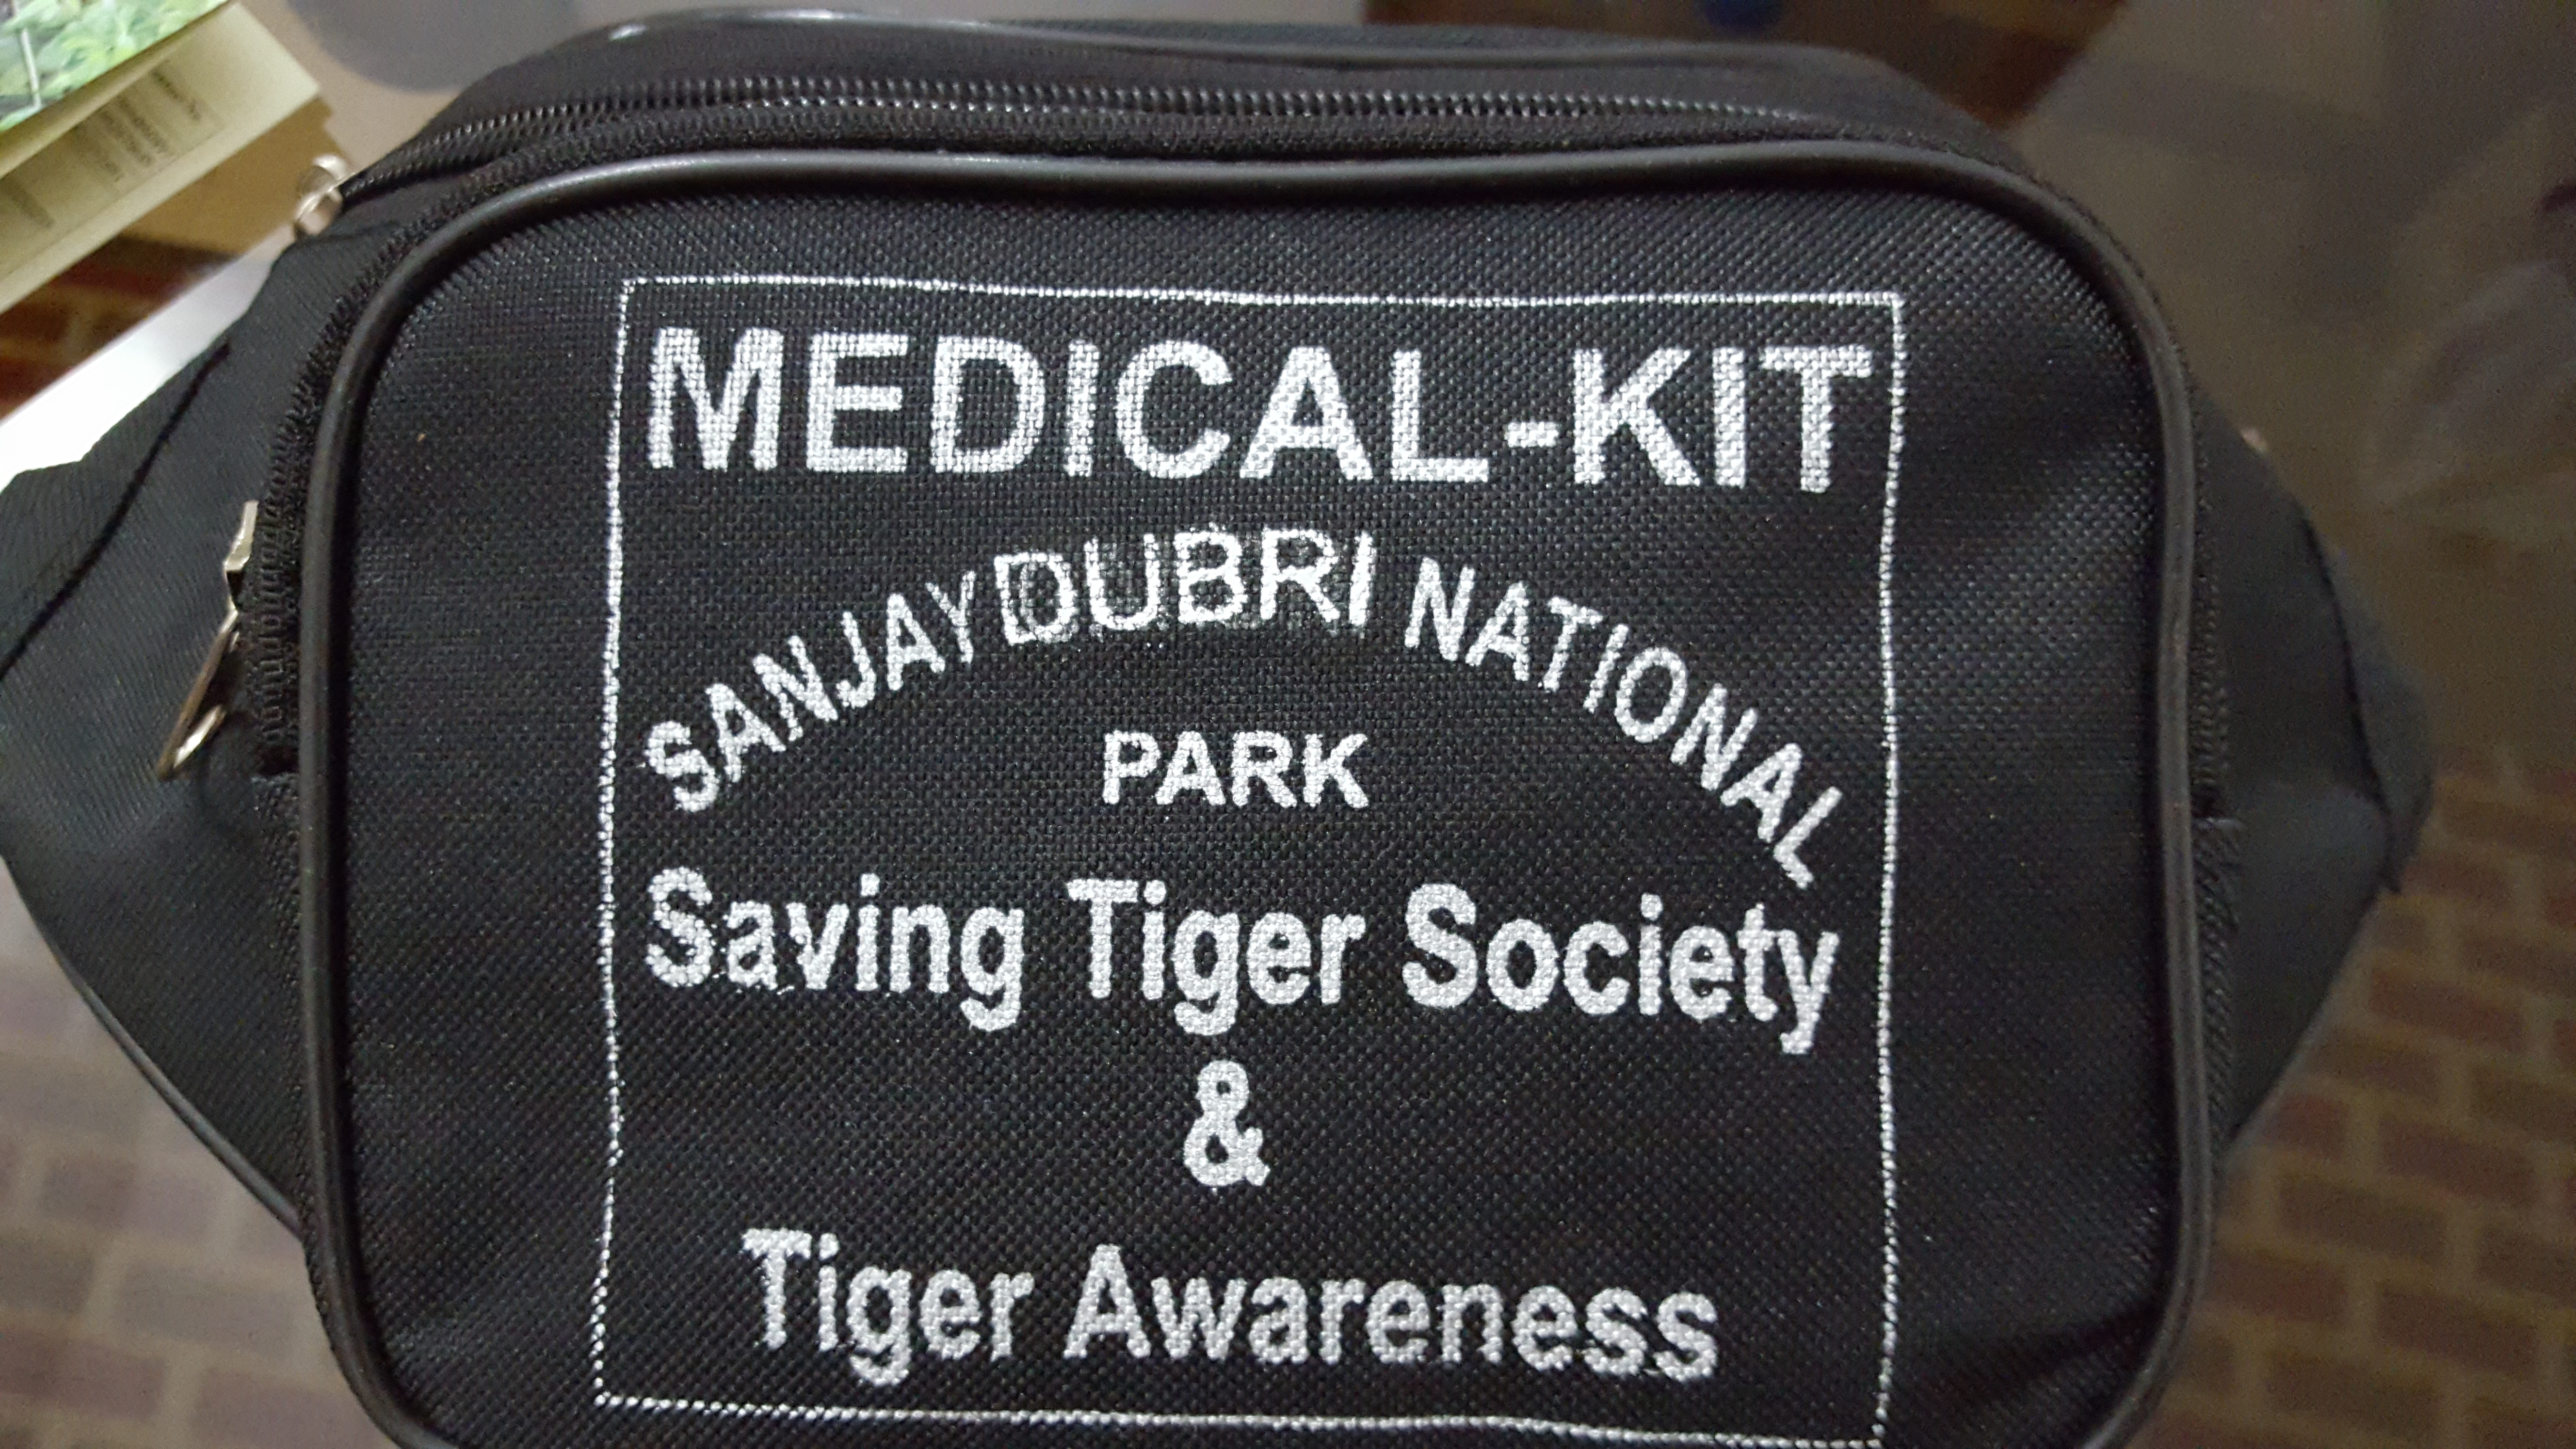 Tiger Awareness